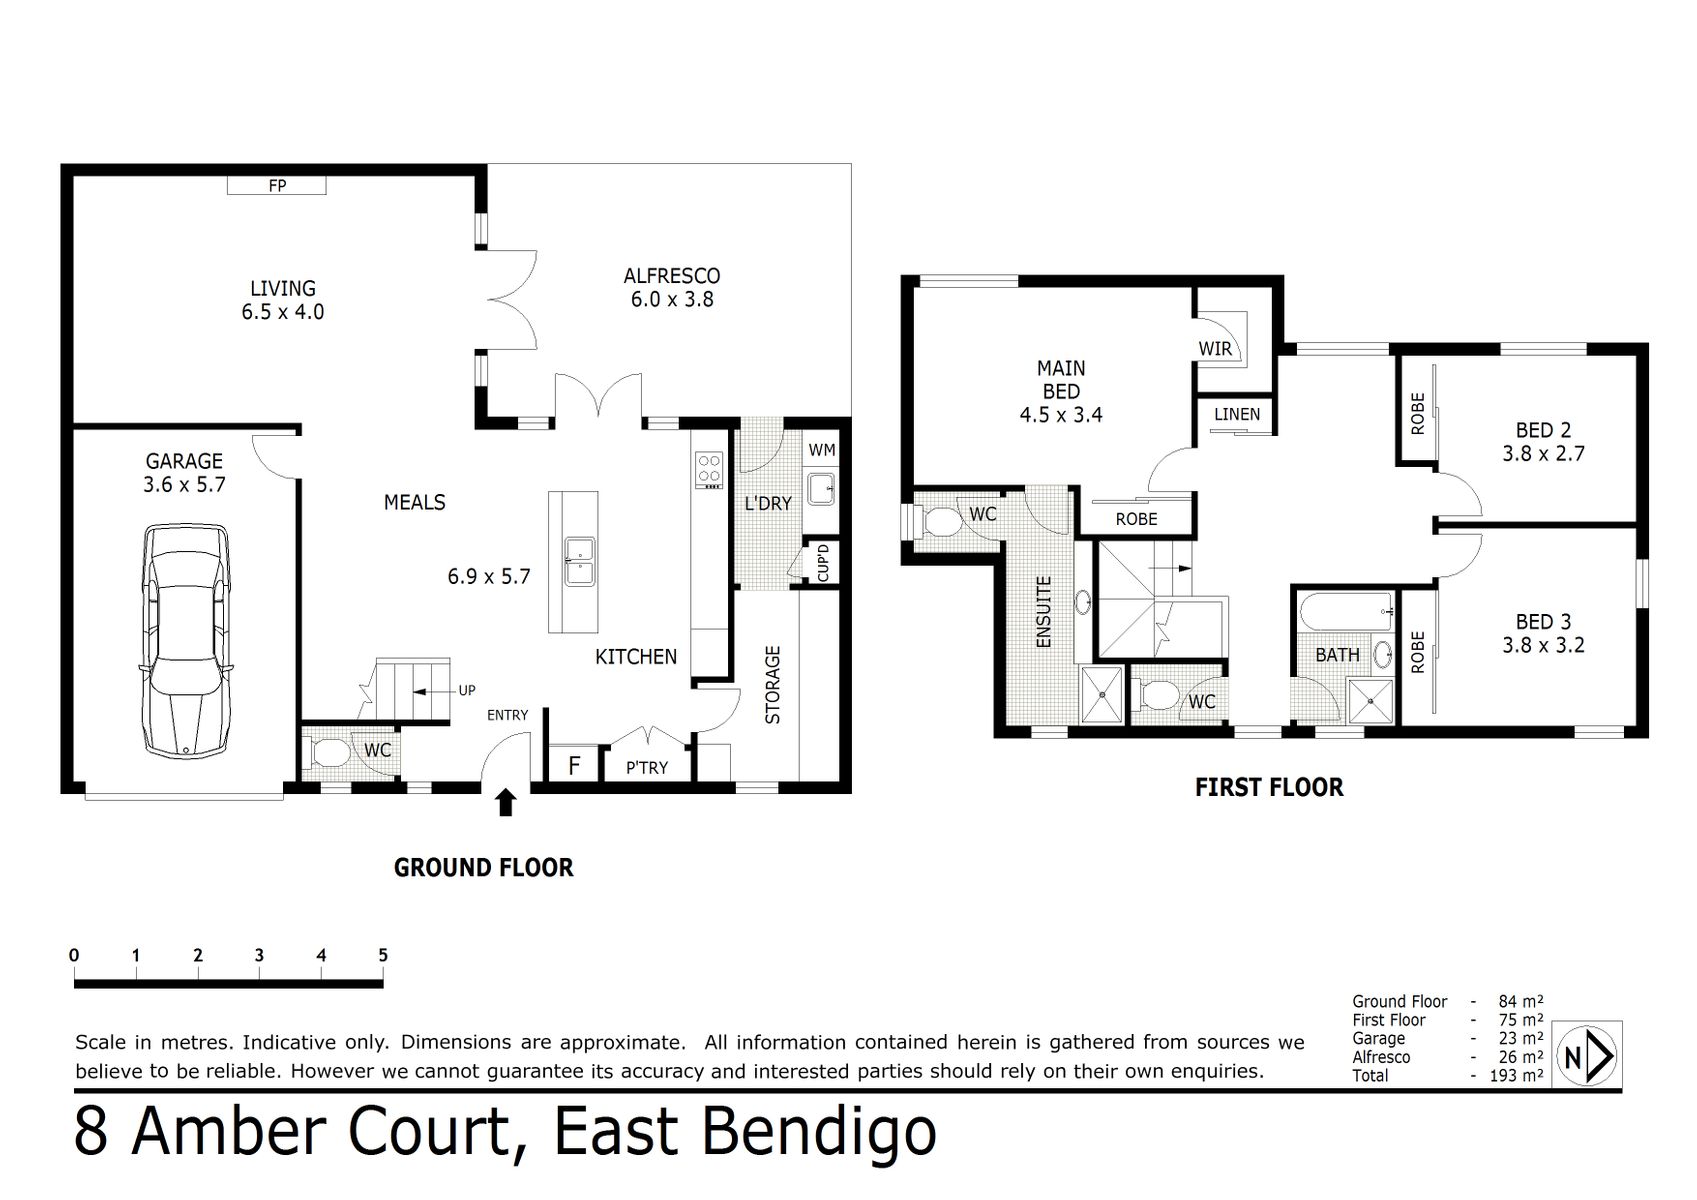 8 Amber Court  East Bendigo (19 NOV 2020) 182sqm